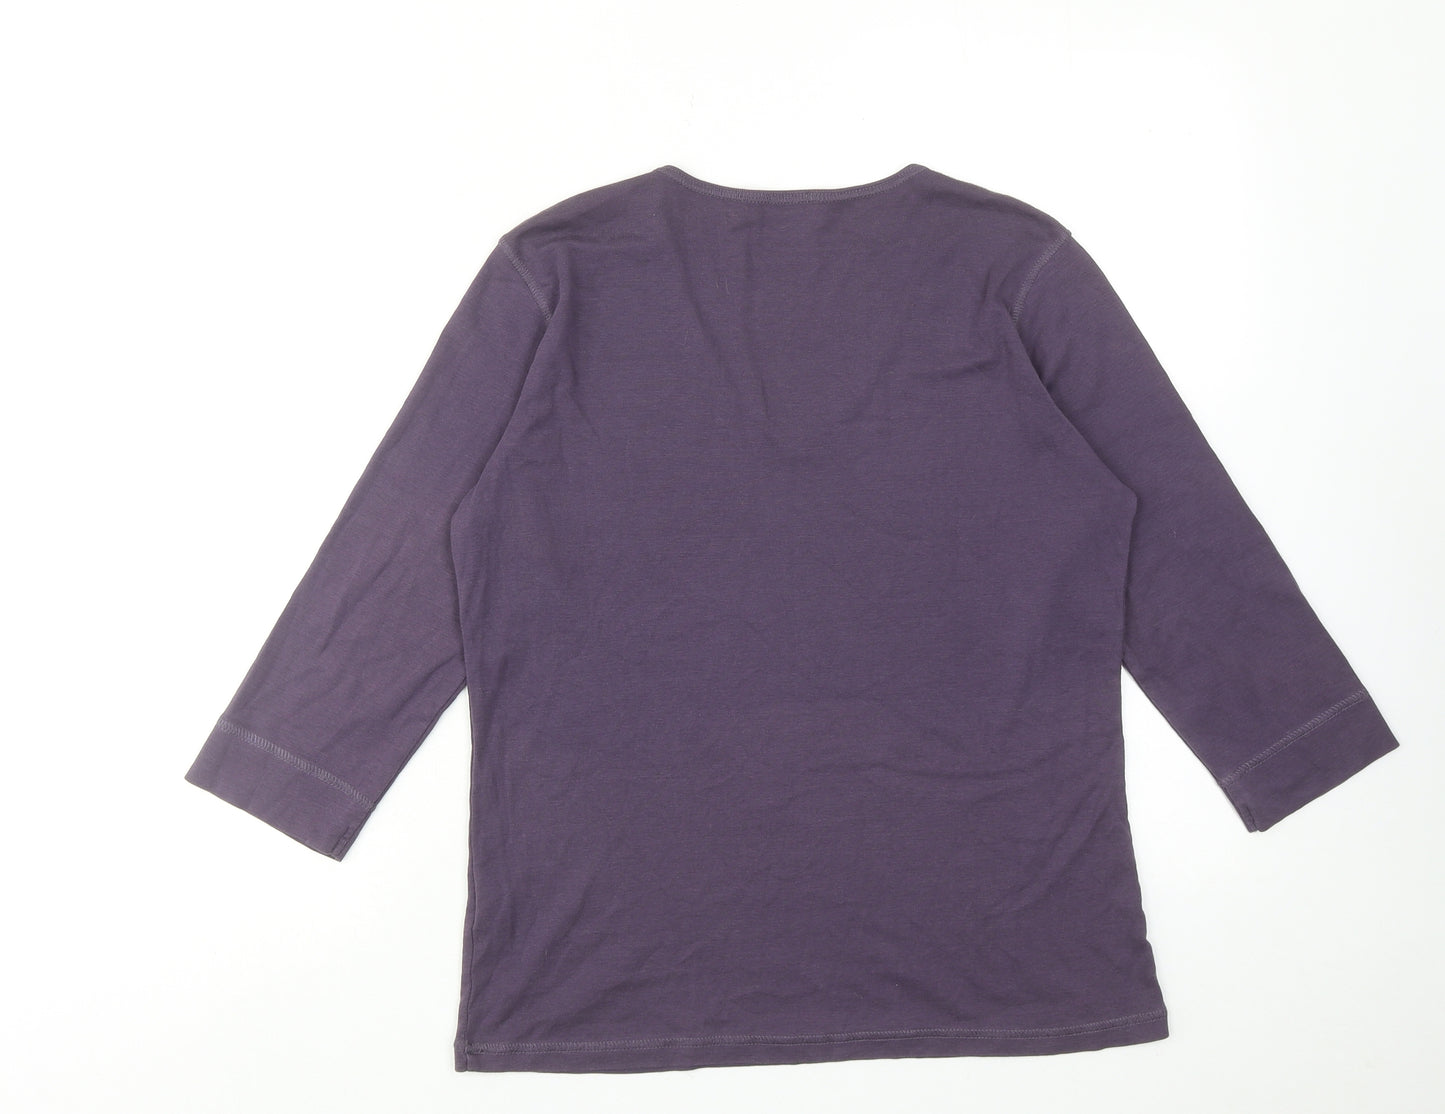 INTOWN Womens Purple Cotton Basic Blouse Size M V-Neck